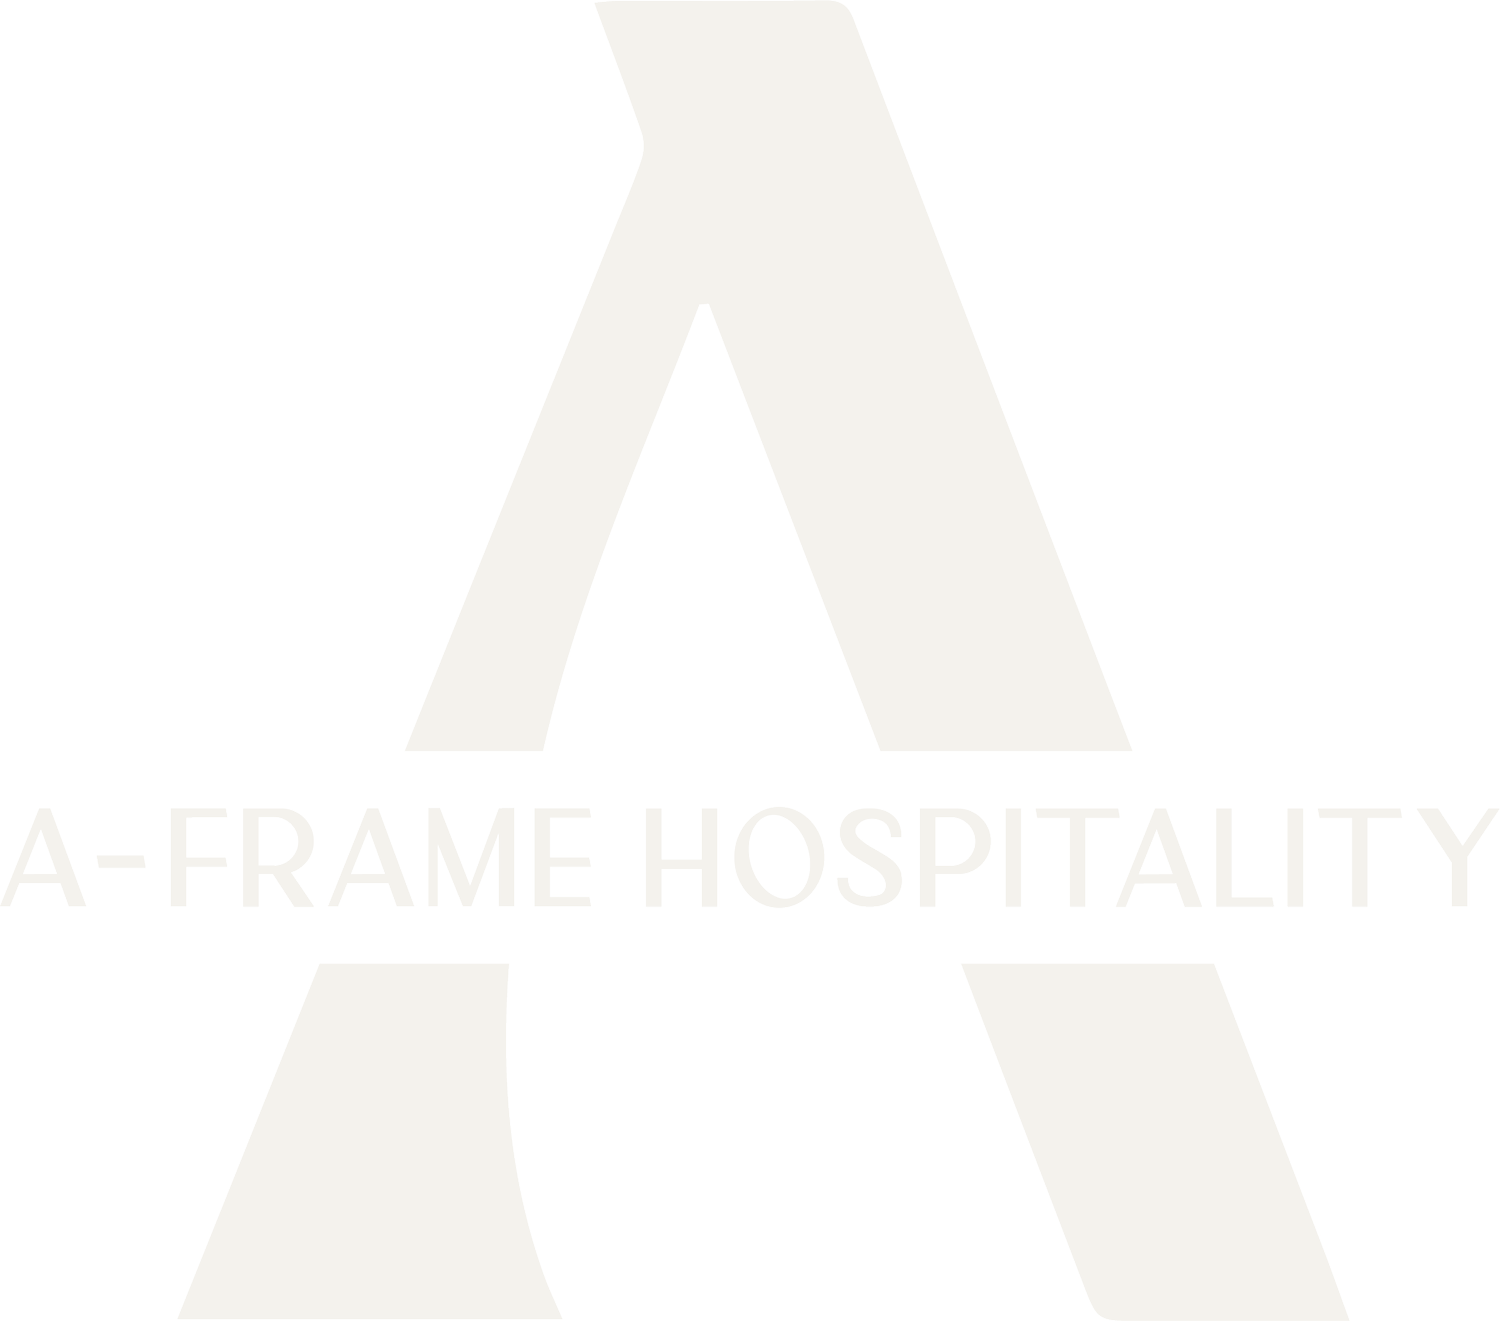 A-Frame Hospitality